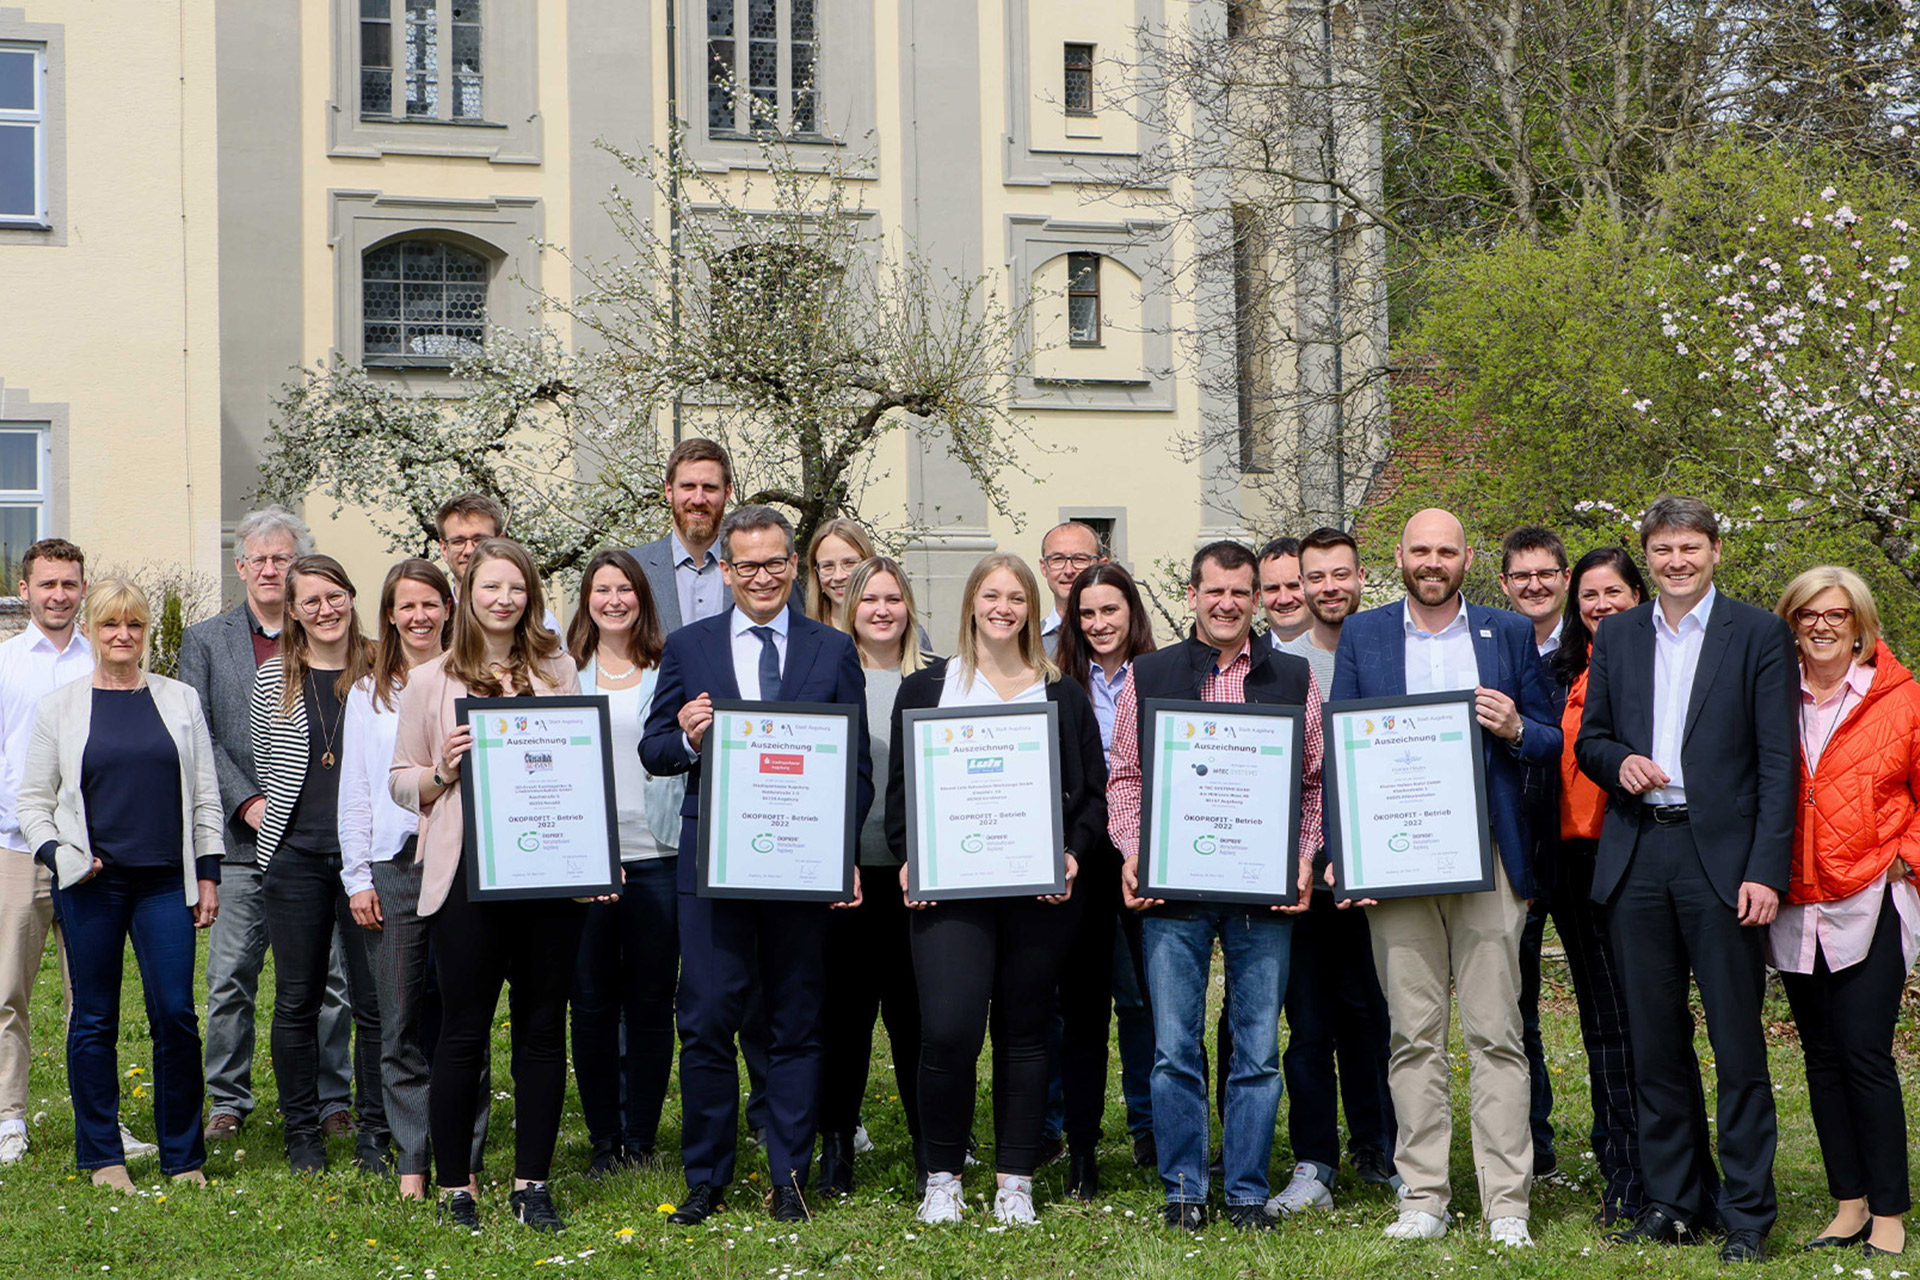 Dem Ziel zu mehr Umwelt- und Klimaschutz kommt die Sparkasse stets näher. Eine unabhängige Prüfungskommission hat die Stadtsparkasse Augsburg nun als ÖKOPROFIT®-A3-Betrieb ausgezeichnet. Die Sparkasse erhielt die Auszeichnung als erstes Finanzinstitut in der Region.